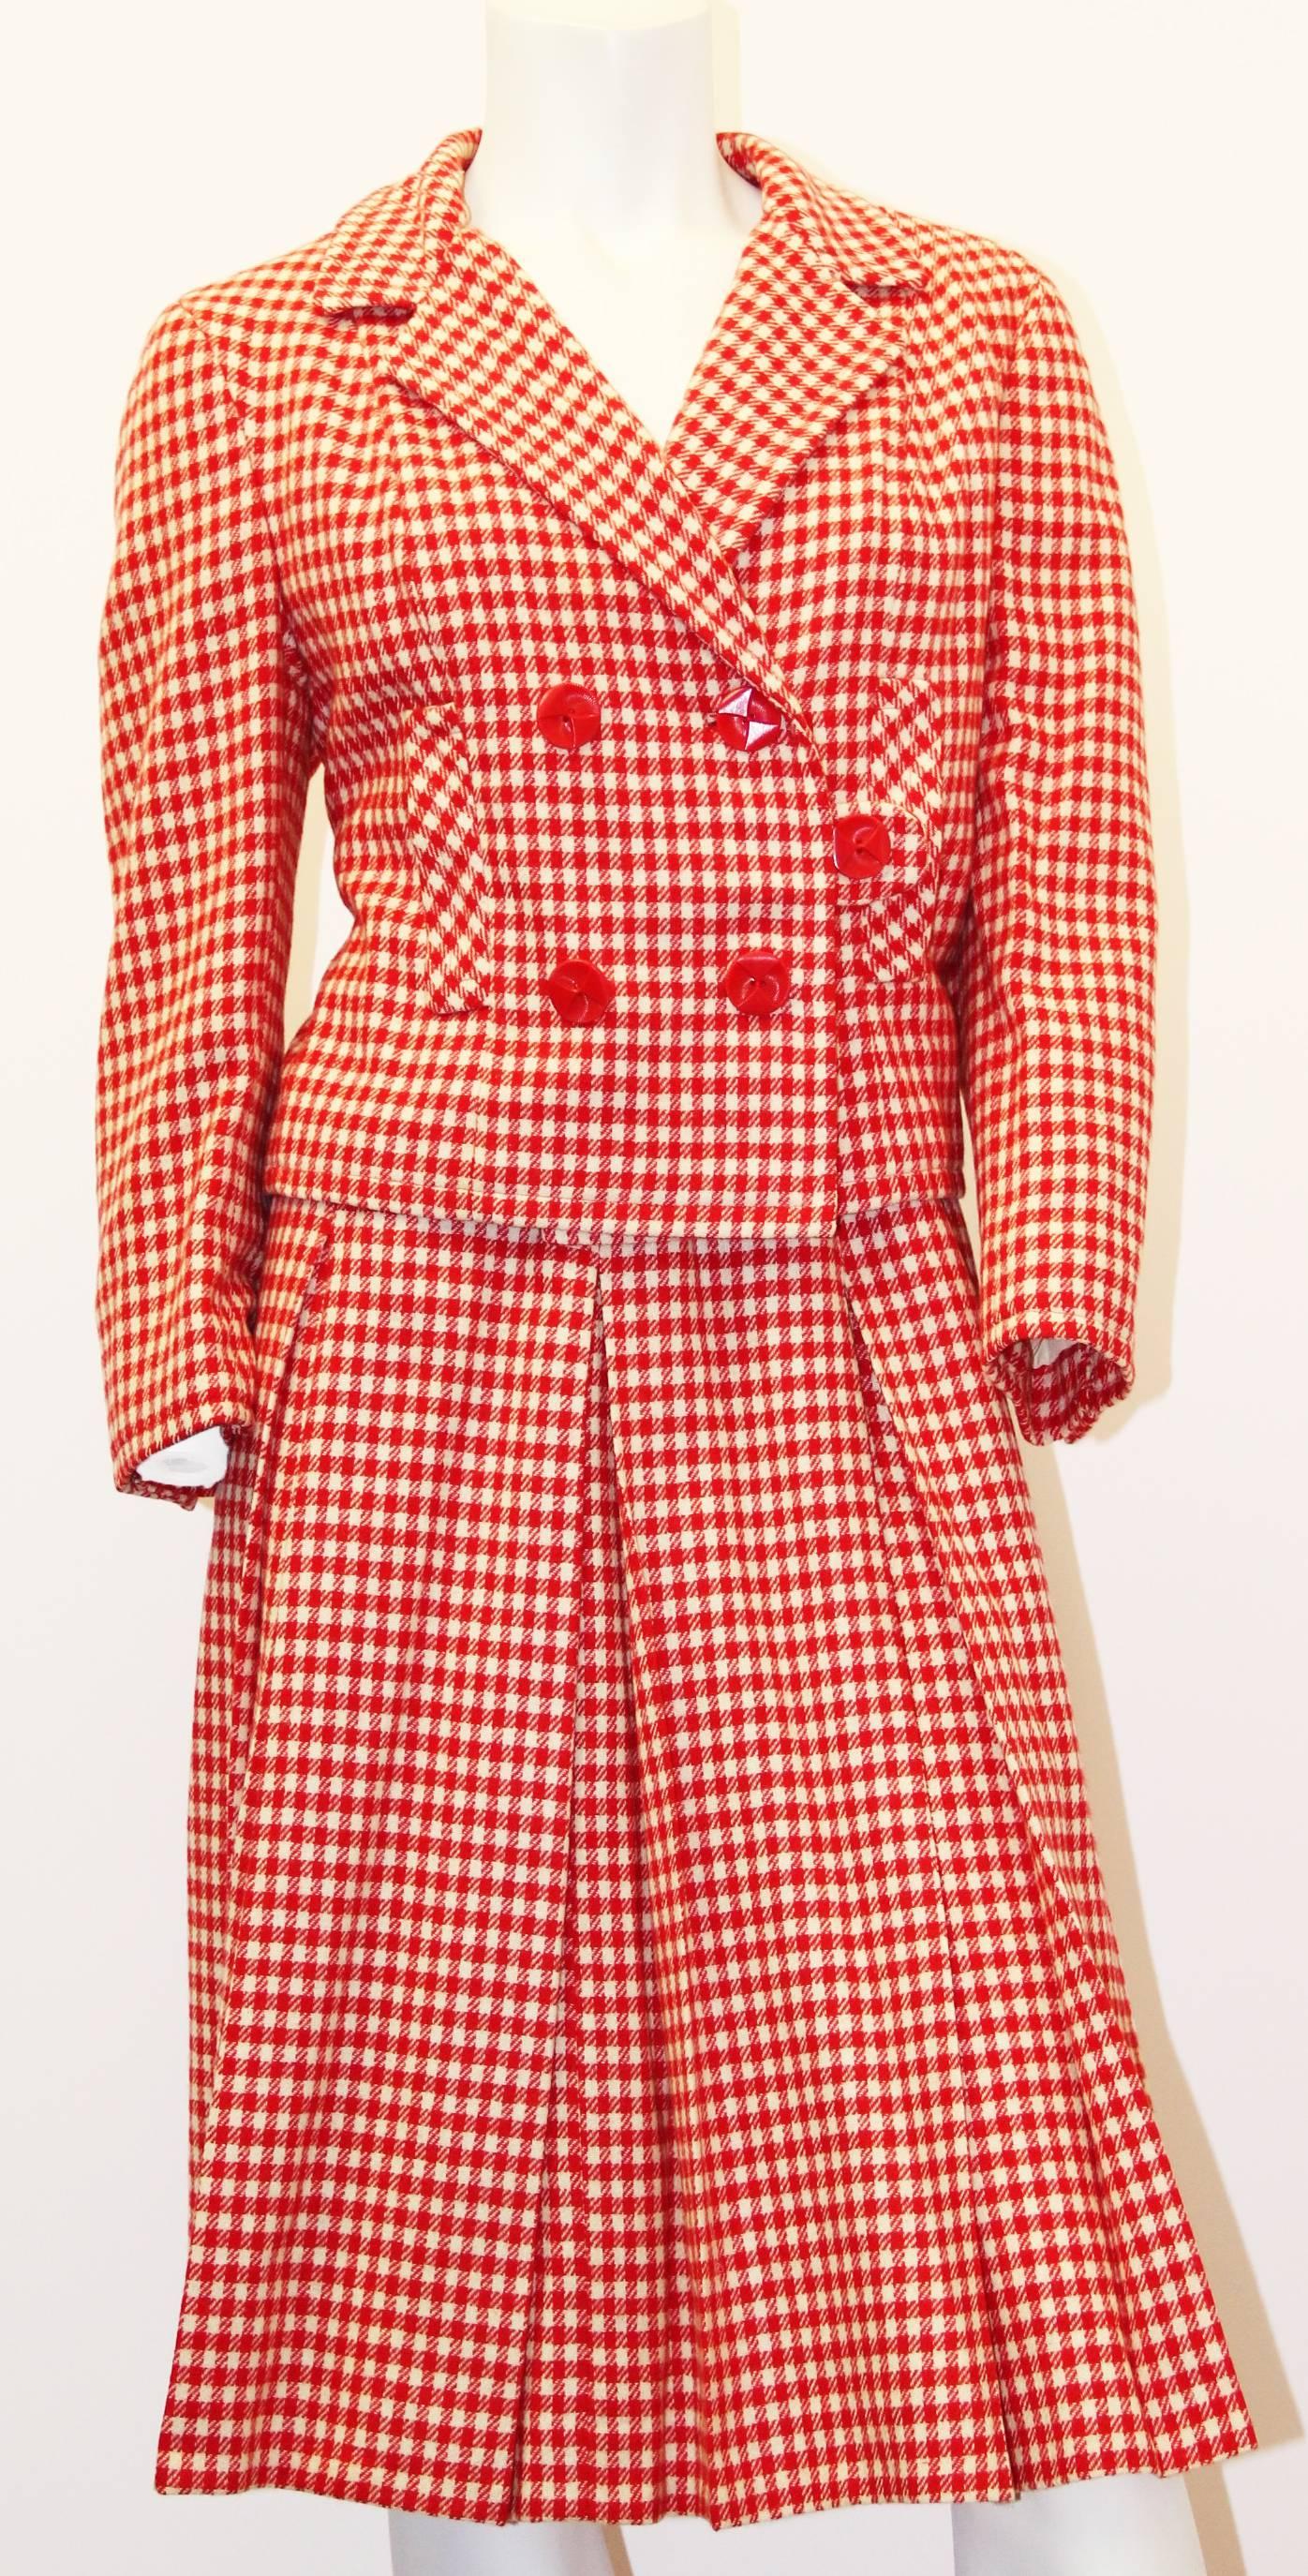 costume jupe double boutonnage en laine à carreaux rouge et crème I.MAGNIN & Co. des années 60. Cette veste entièrement doublée est dotée d'une double poitrine et de fausses poches sur le devant. La jupe plissée (non doublée) se ferme par une